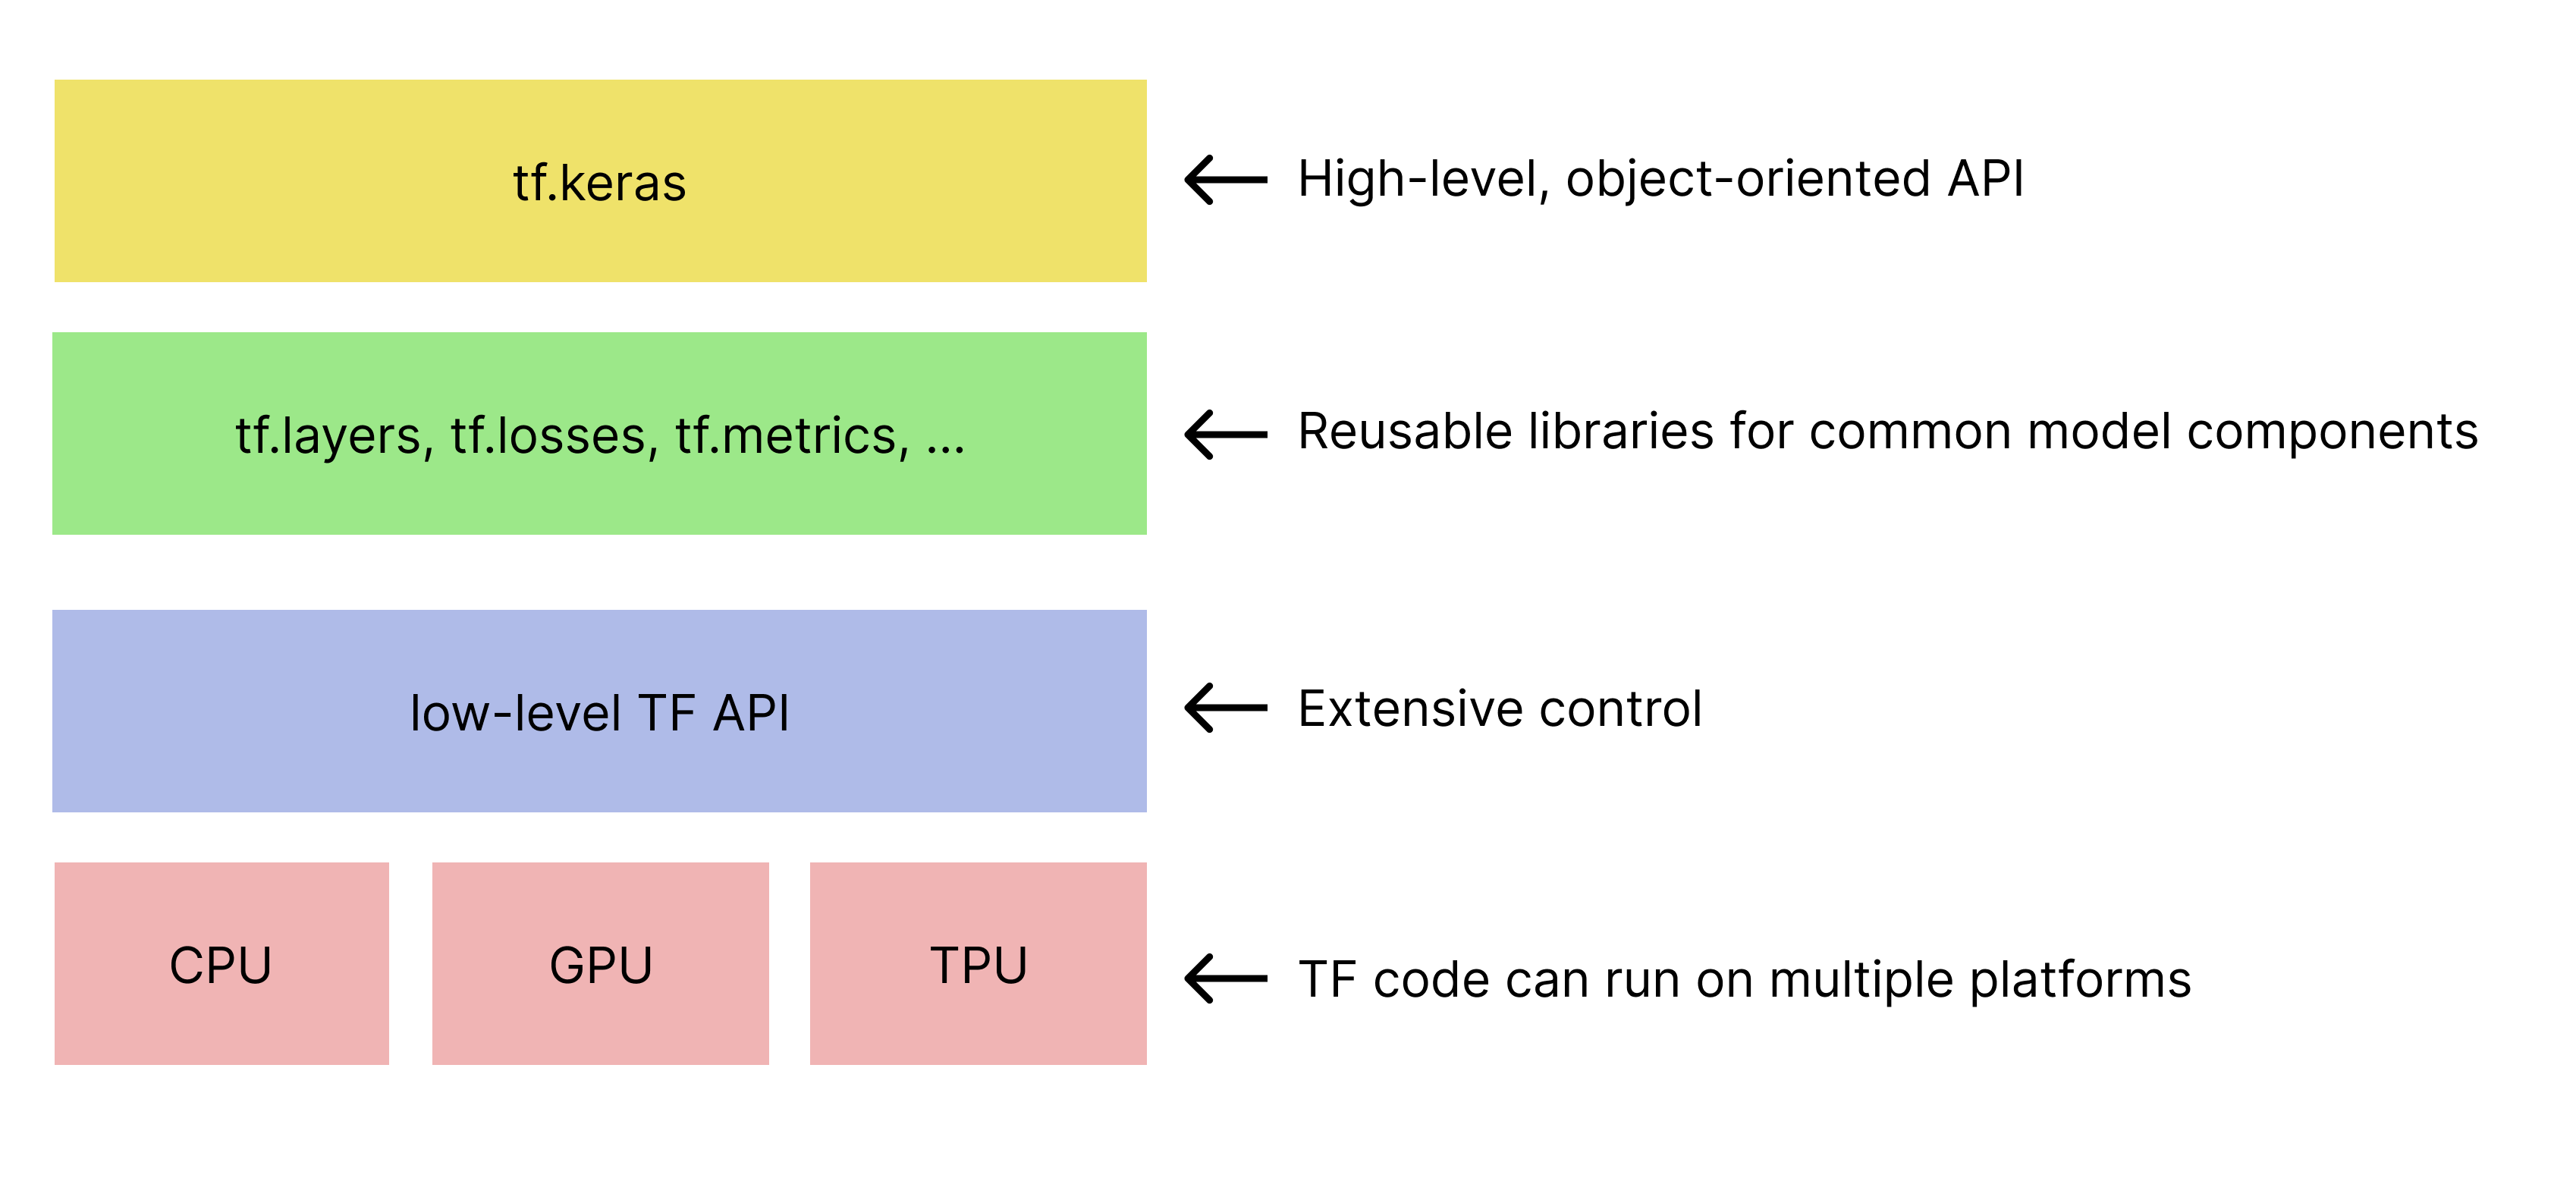 Hierarki toolkit TensorFlow yang disederhanakan. 
   tf.keras API ada di bagian atas.